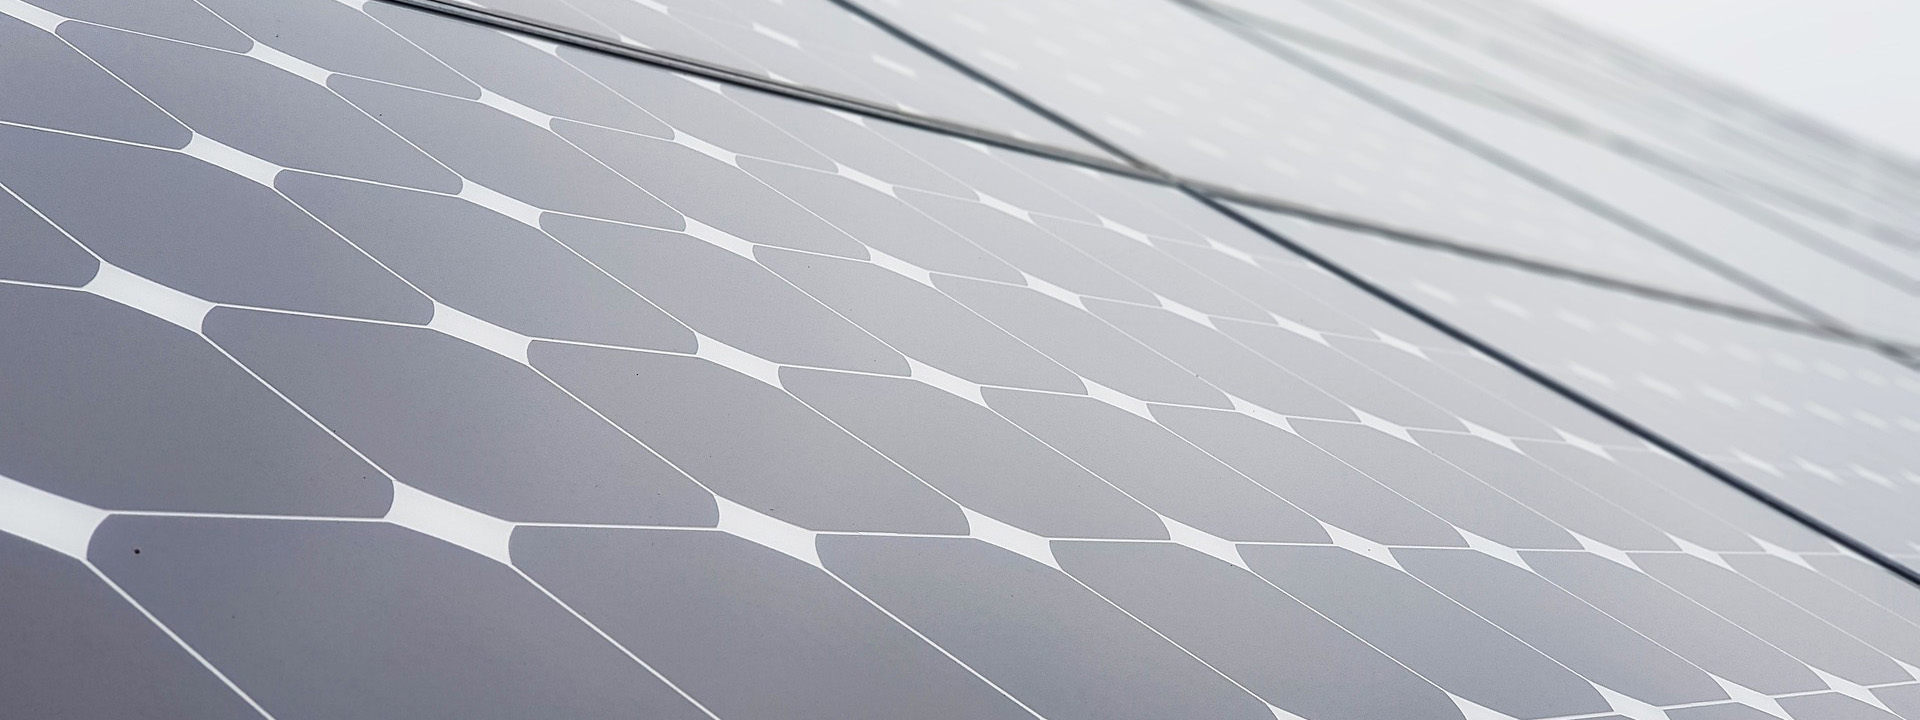 Fotovoltaico con accumulo: come funziona e vantaggi.